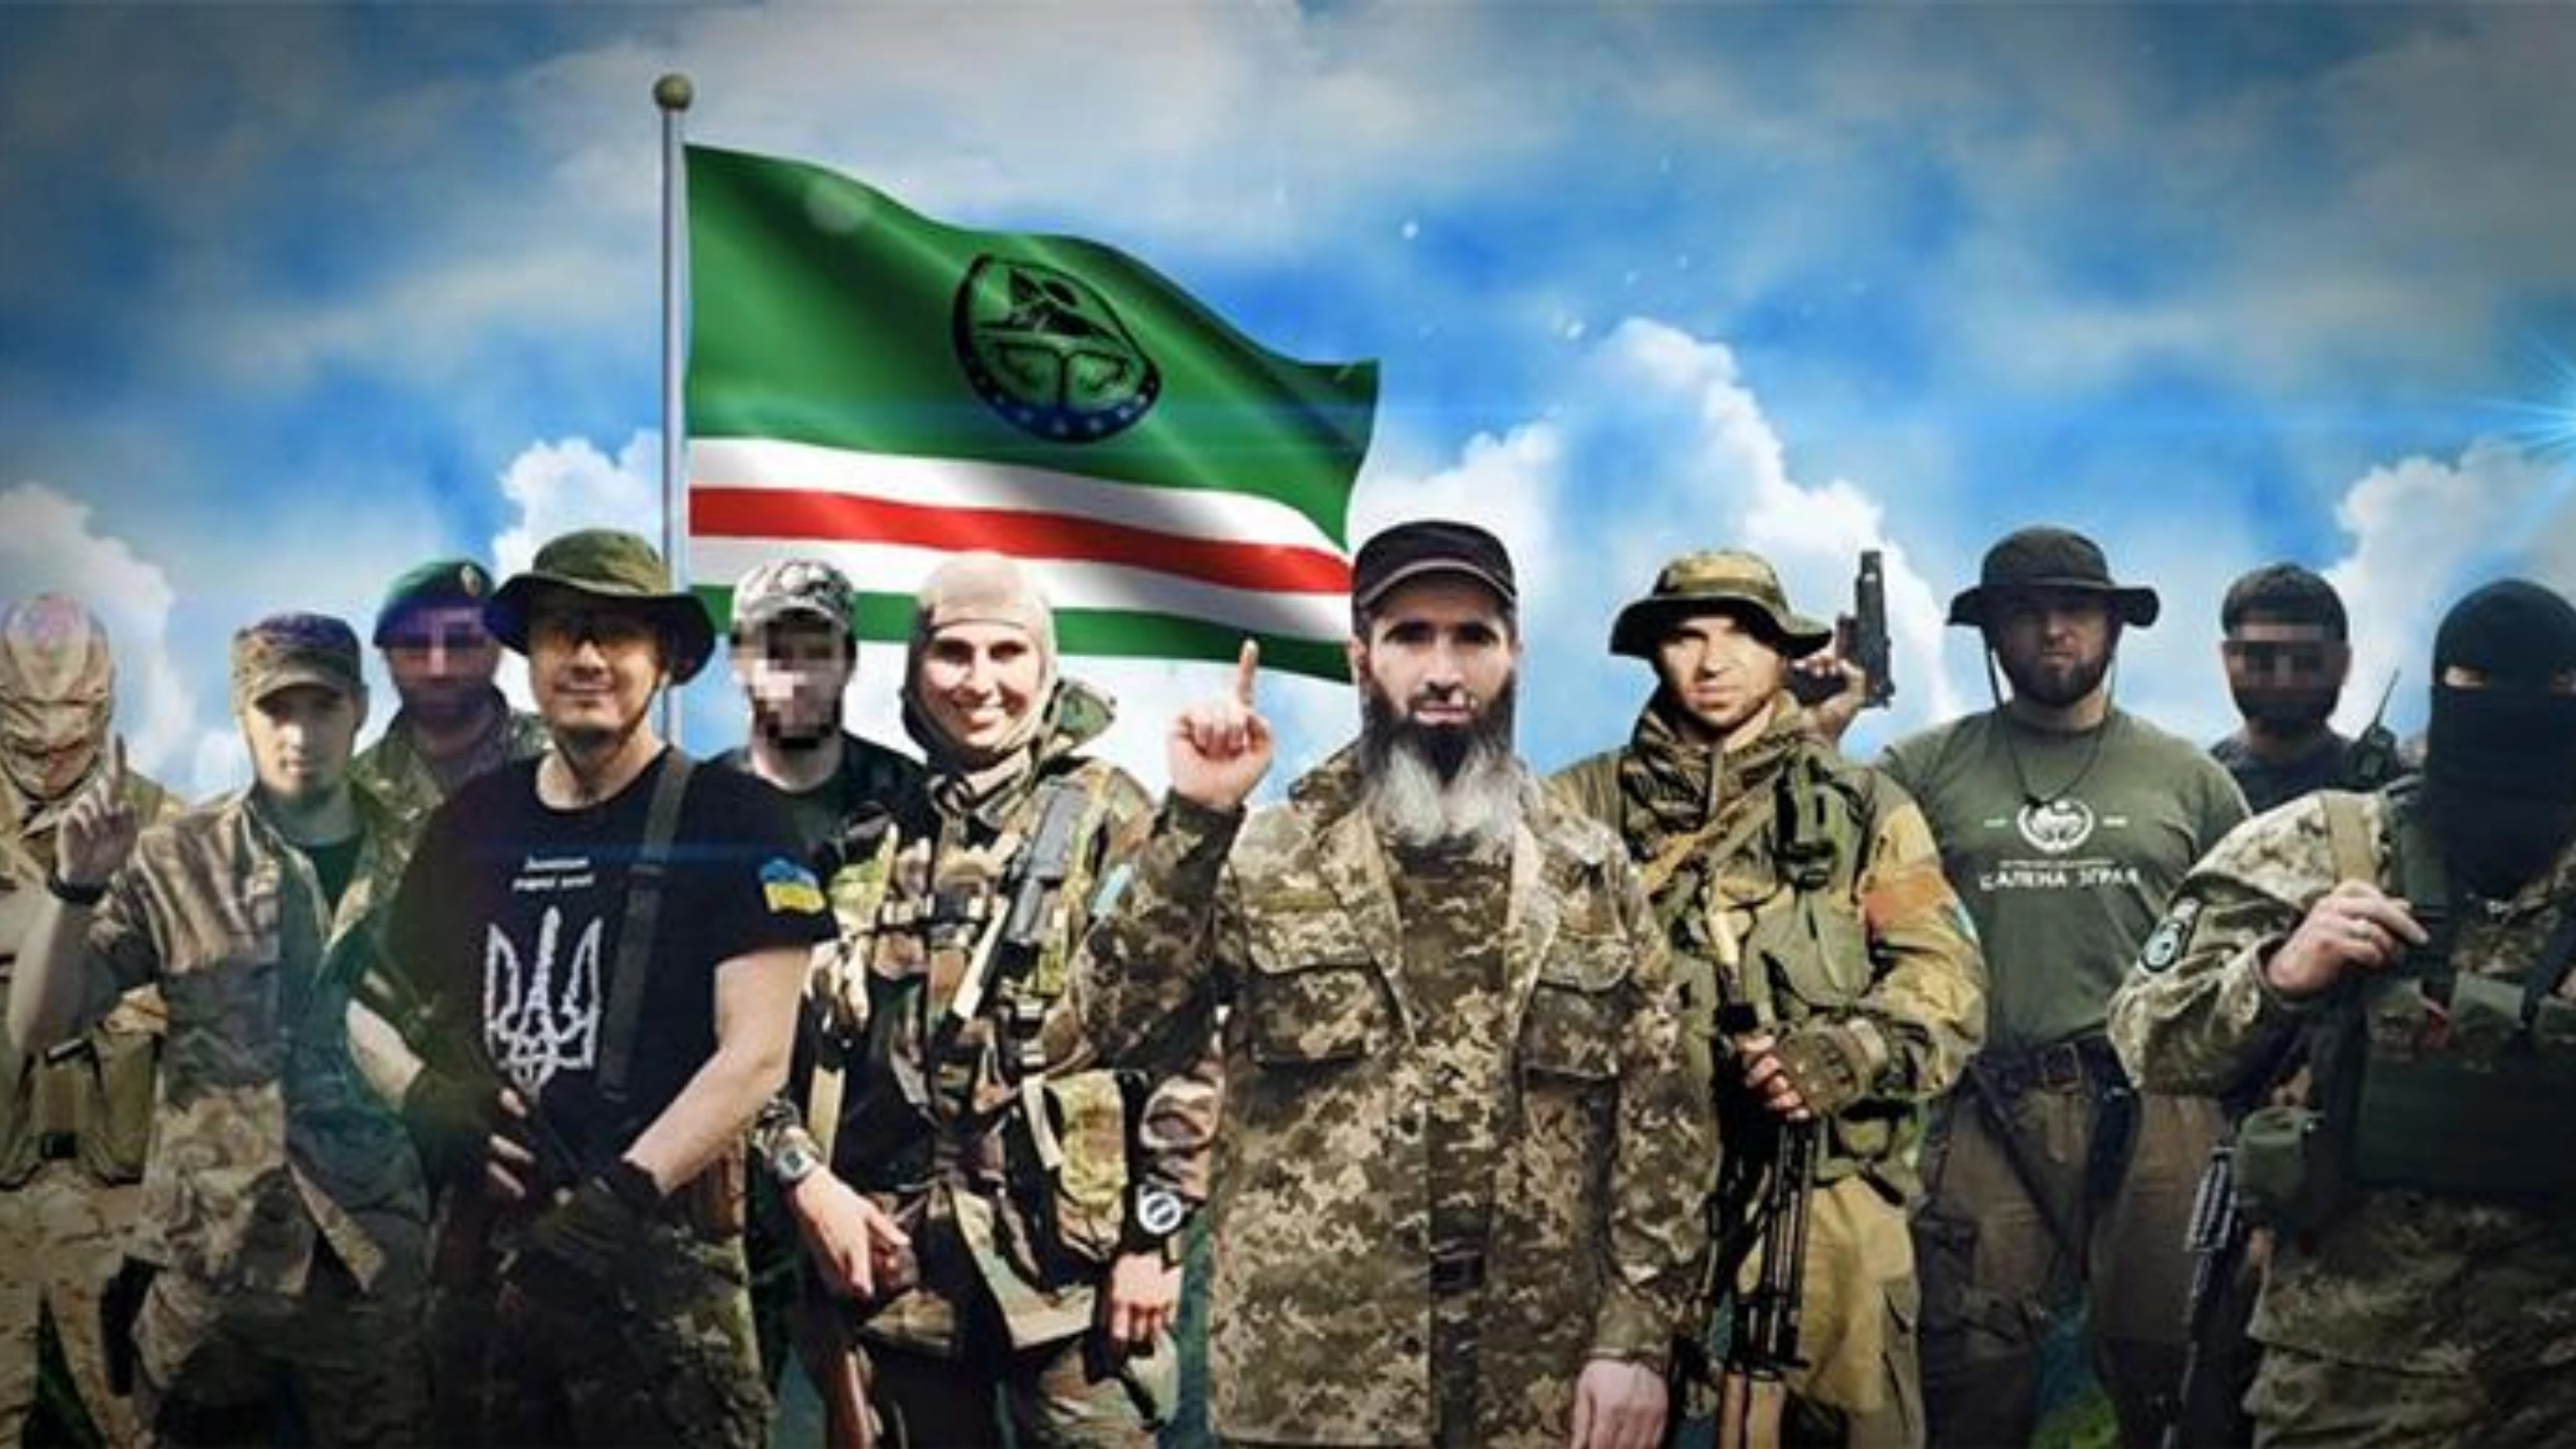 مختصة بقتال الروس .. من هي كتيبة "الشيخ منصور "المسلمة؟ وكيف وصلت إلى أوكرانيا؟ (فيديو)